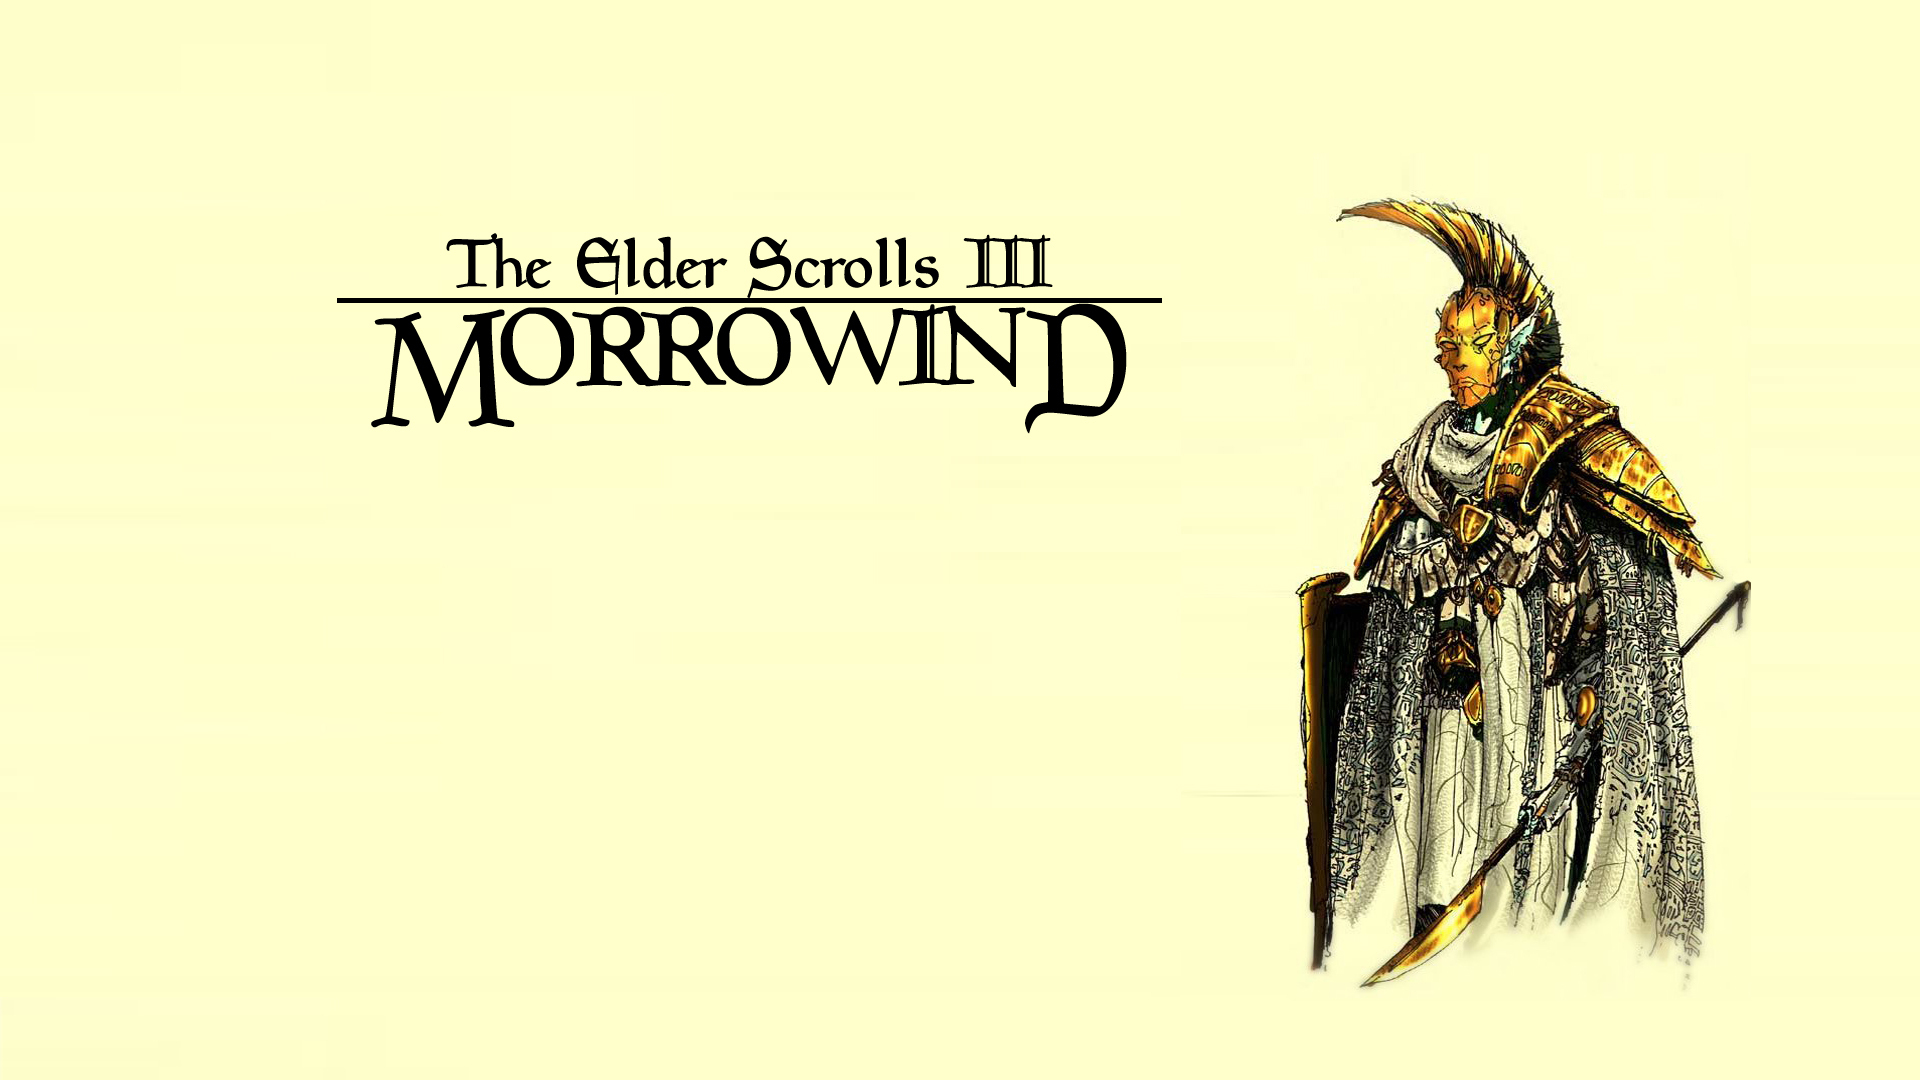 The Elder Scrolls Iii Morrowind Hd Wallpaper Background Image 1920x1080